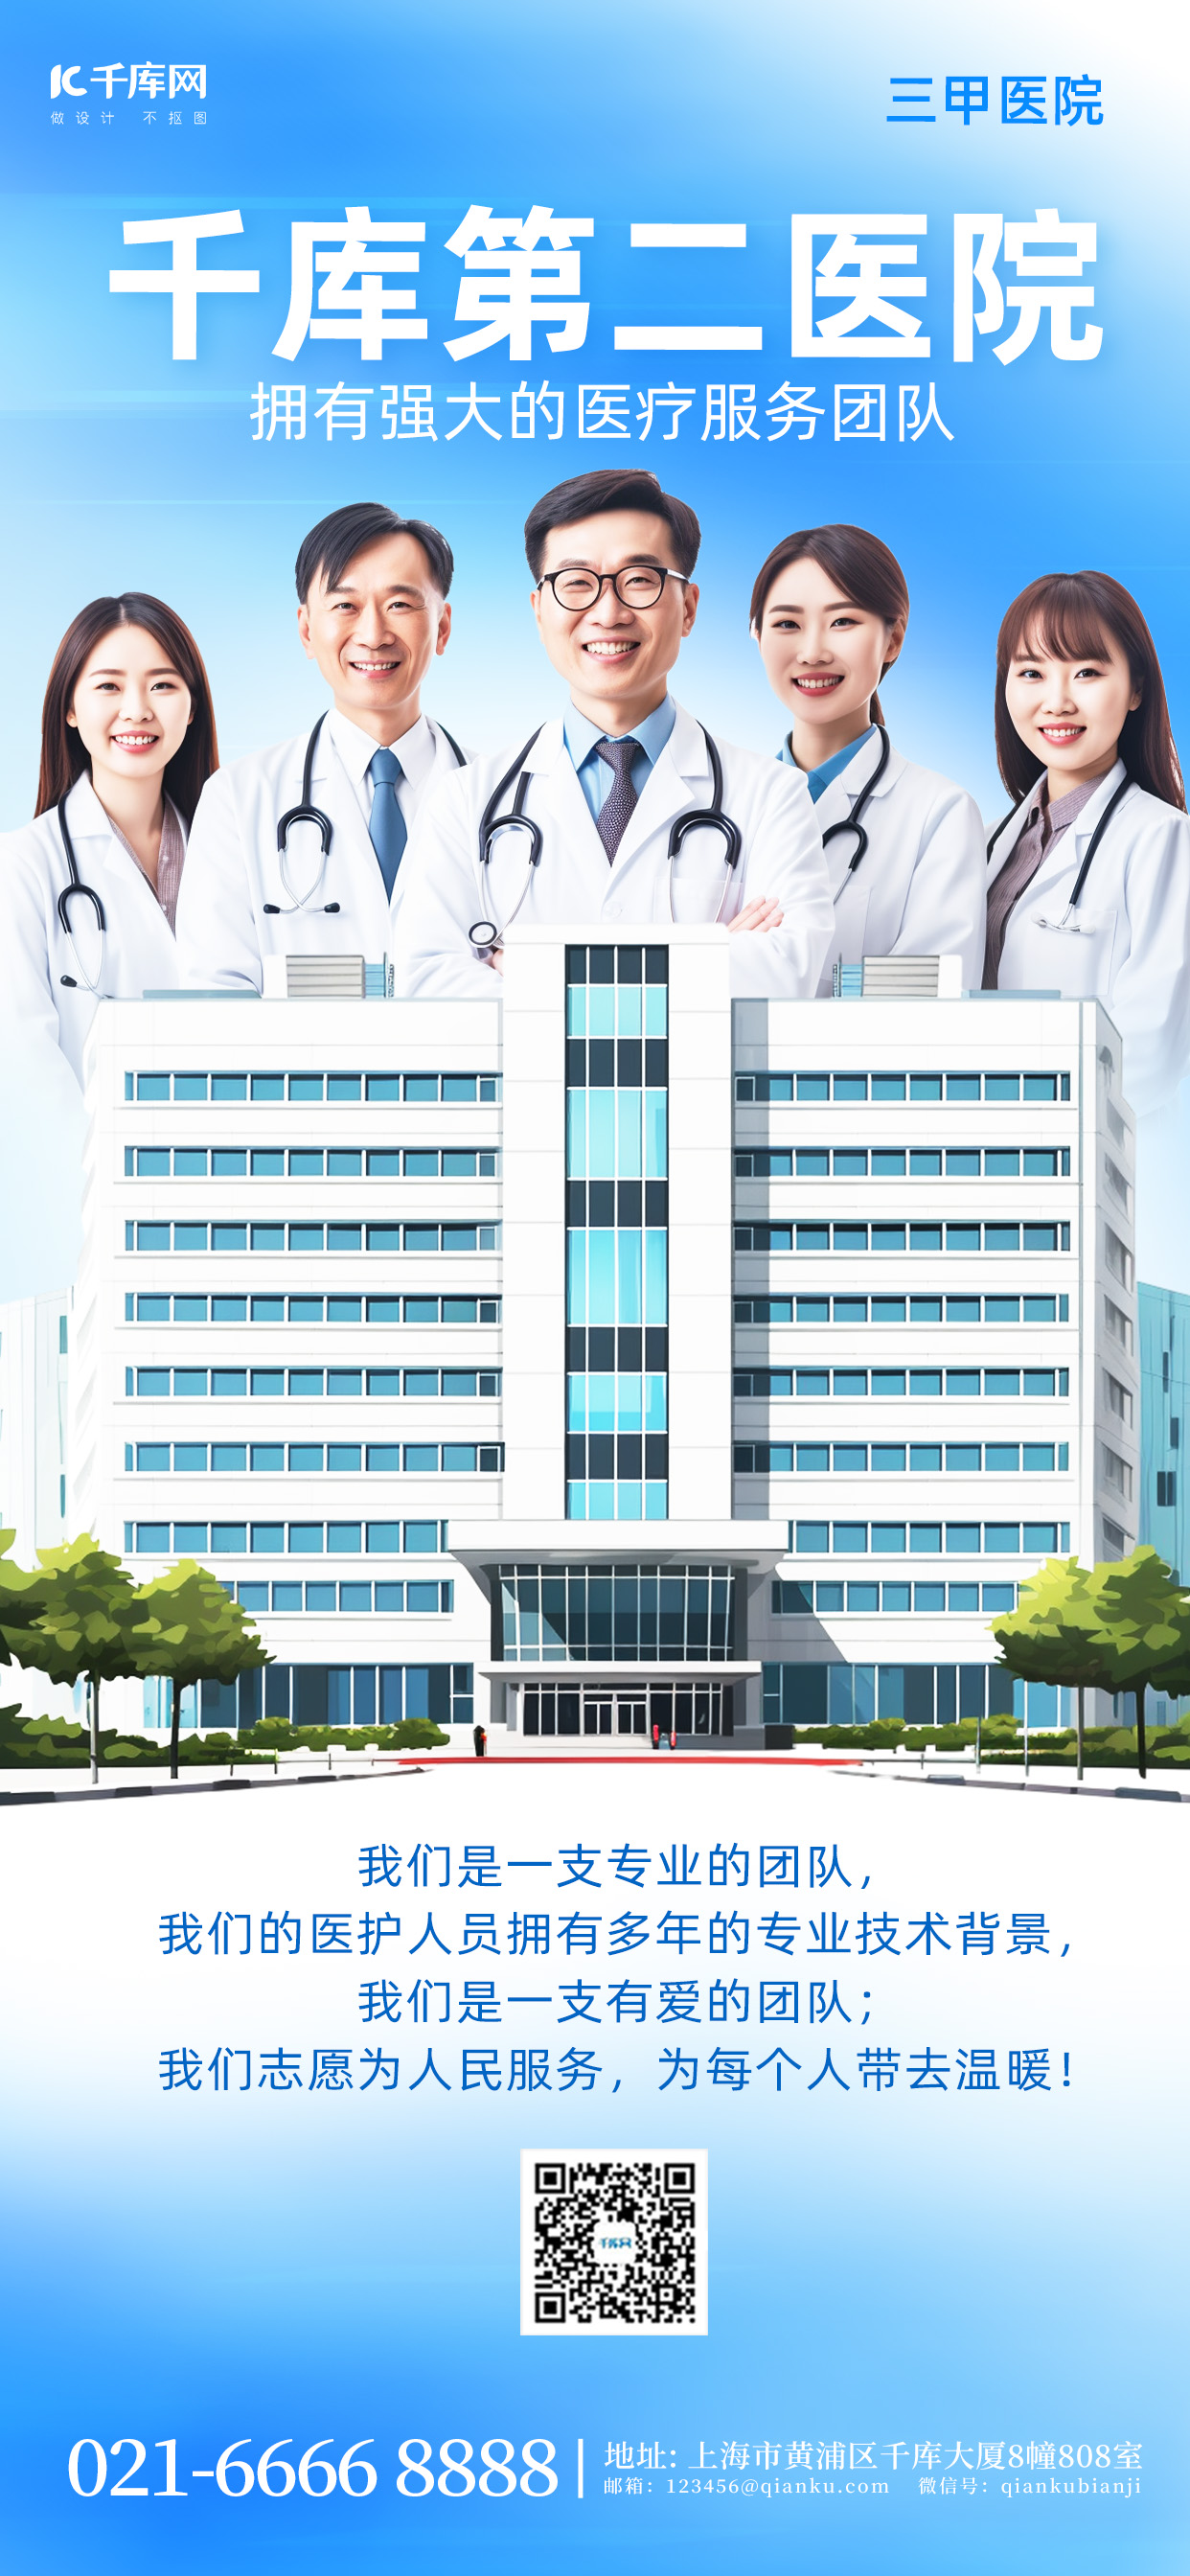 医院宣传医生蓝色简约手机广告宣传海报图片